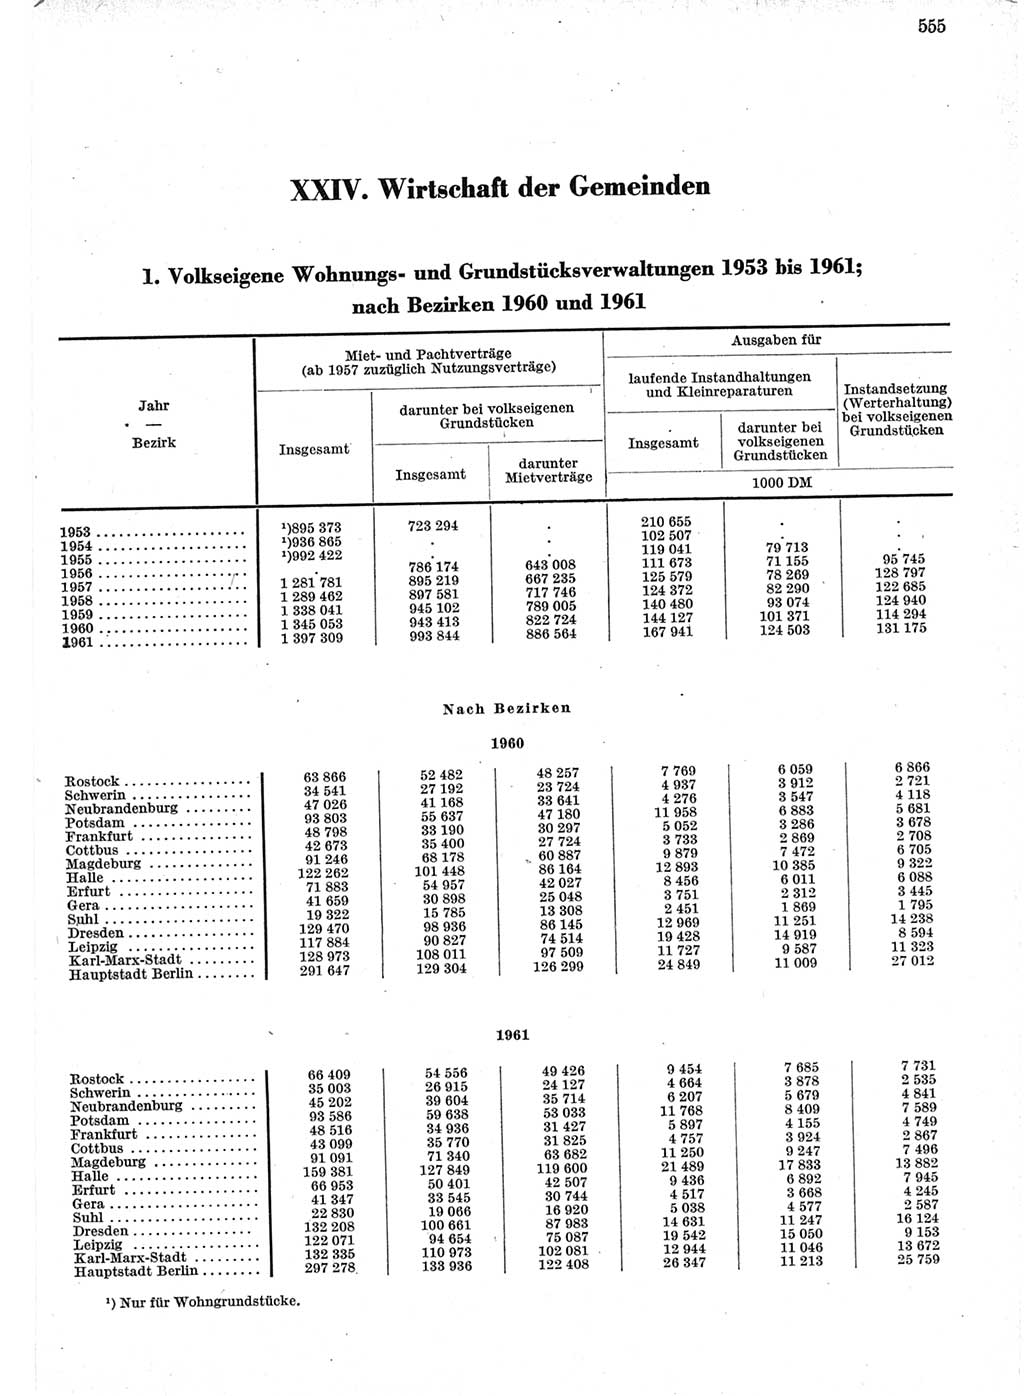 Statistisches Jahrbuch der Deutschen Demokratischen Republik (DDR) 1962, Seite 555 (Stat. Jb. DDR 1962, S. 555)